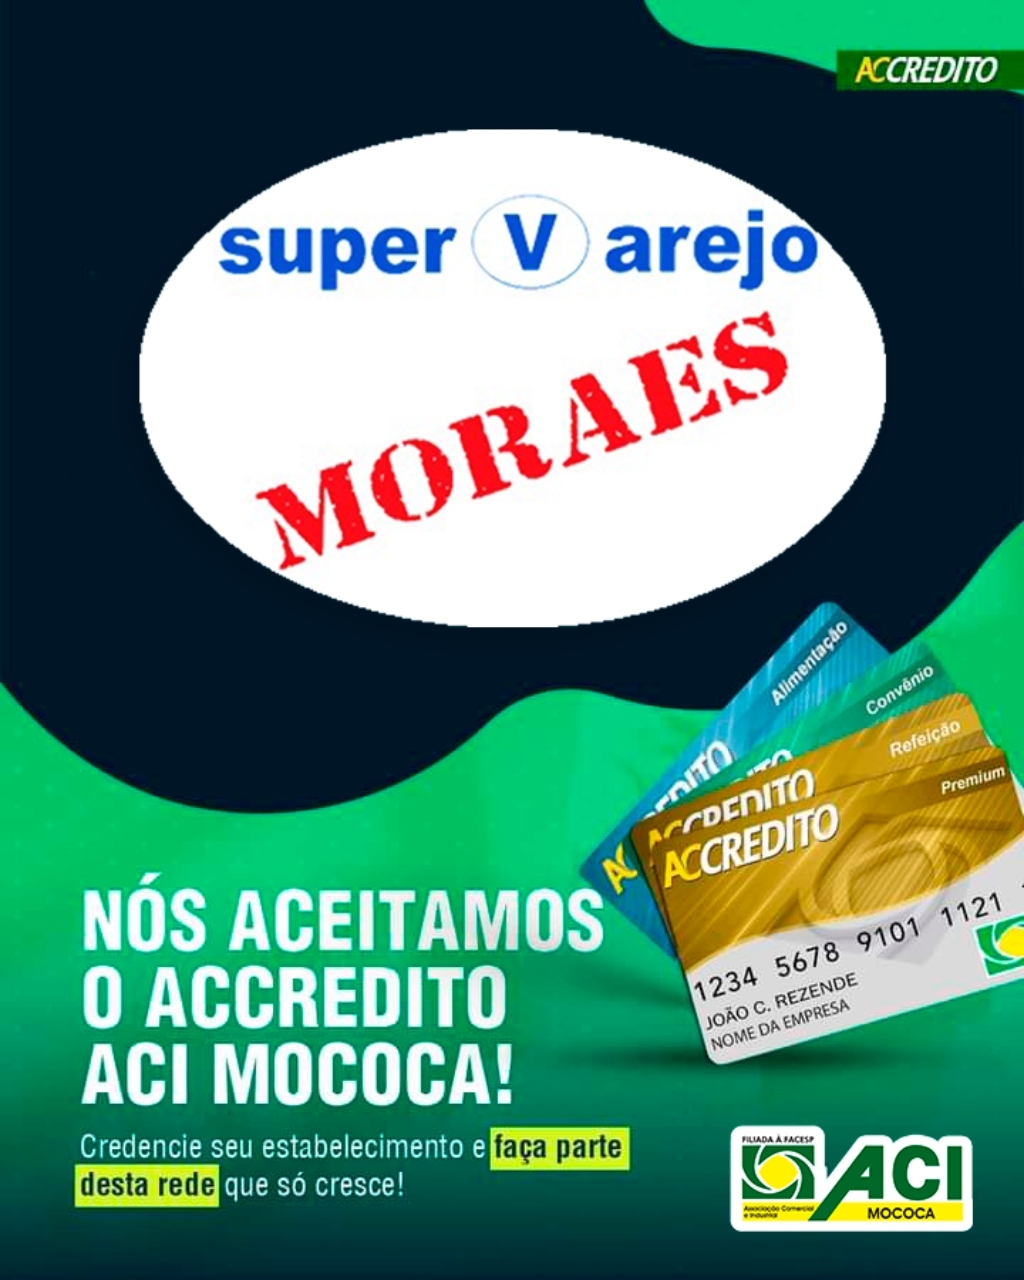 Super Varejo Moraes